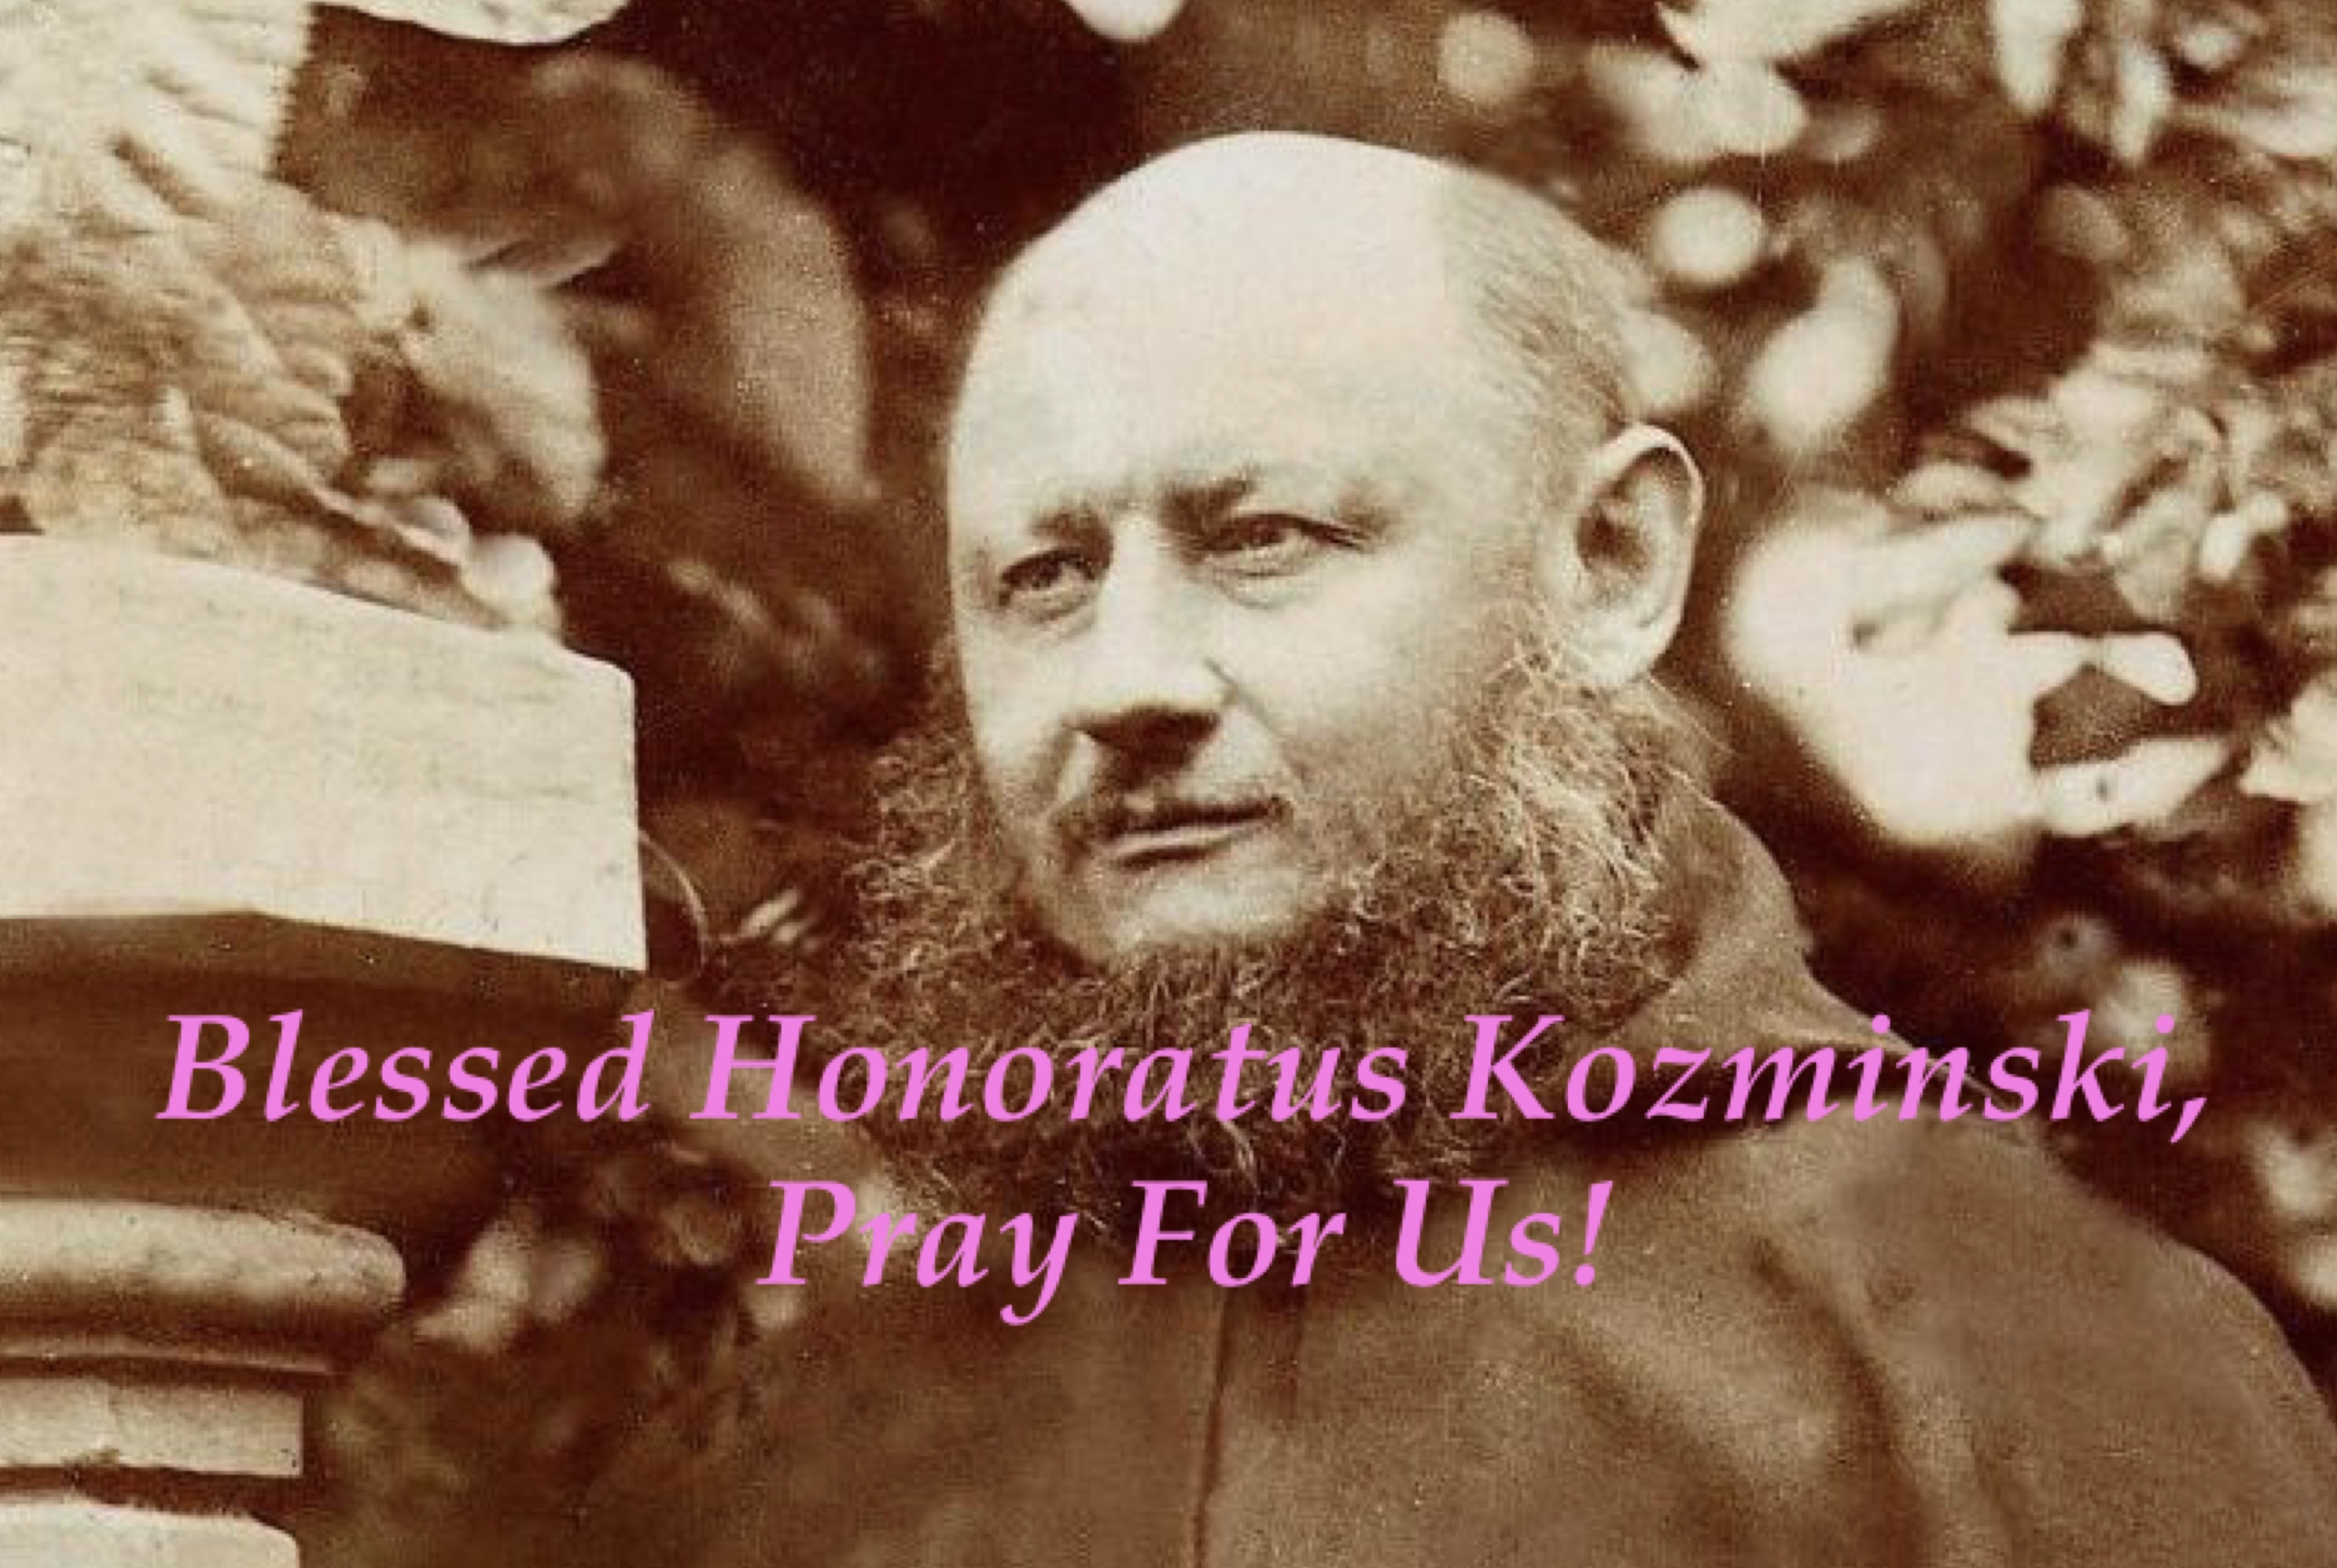 16th December - Blessed Honoratus Kozminski